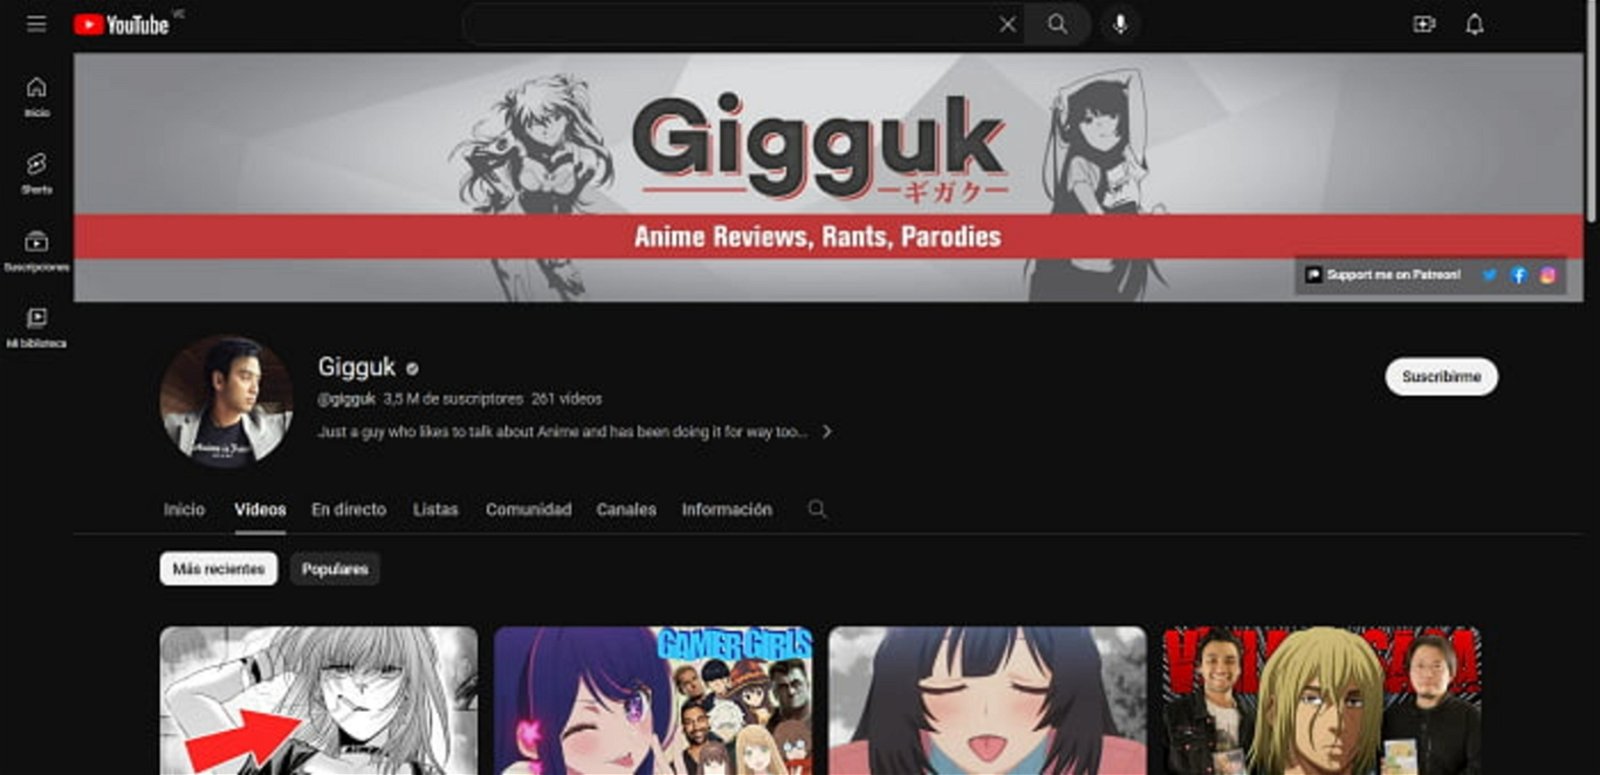 Sin dudas, Gigguk es uno de los más exitosos en cuanto a los canales de Youtube referidos al anime